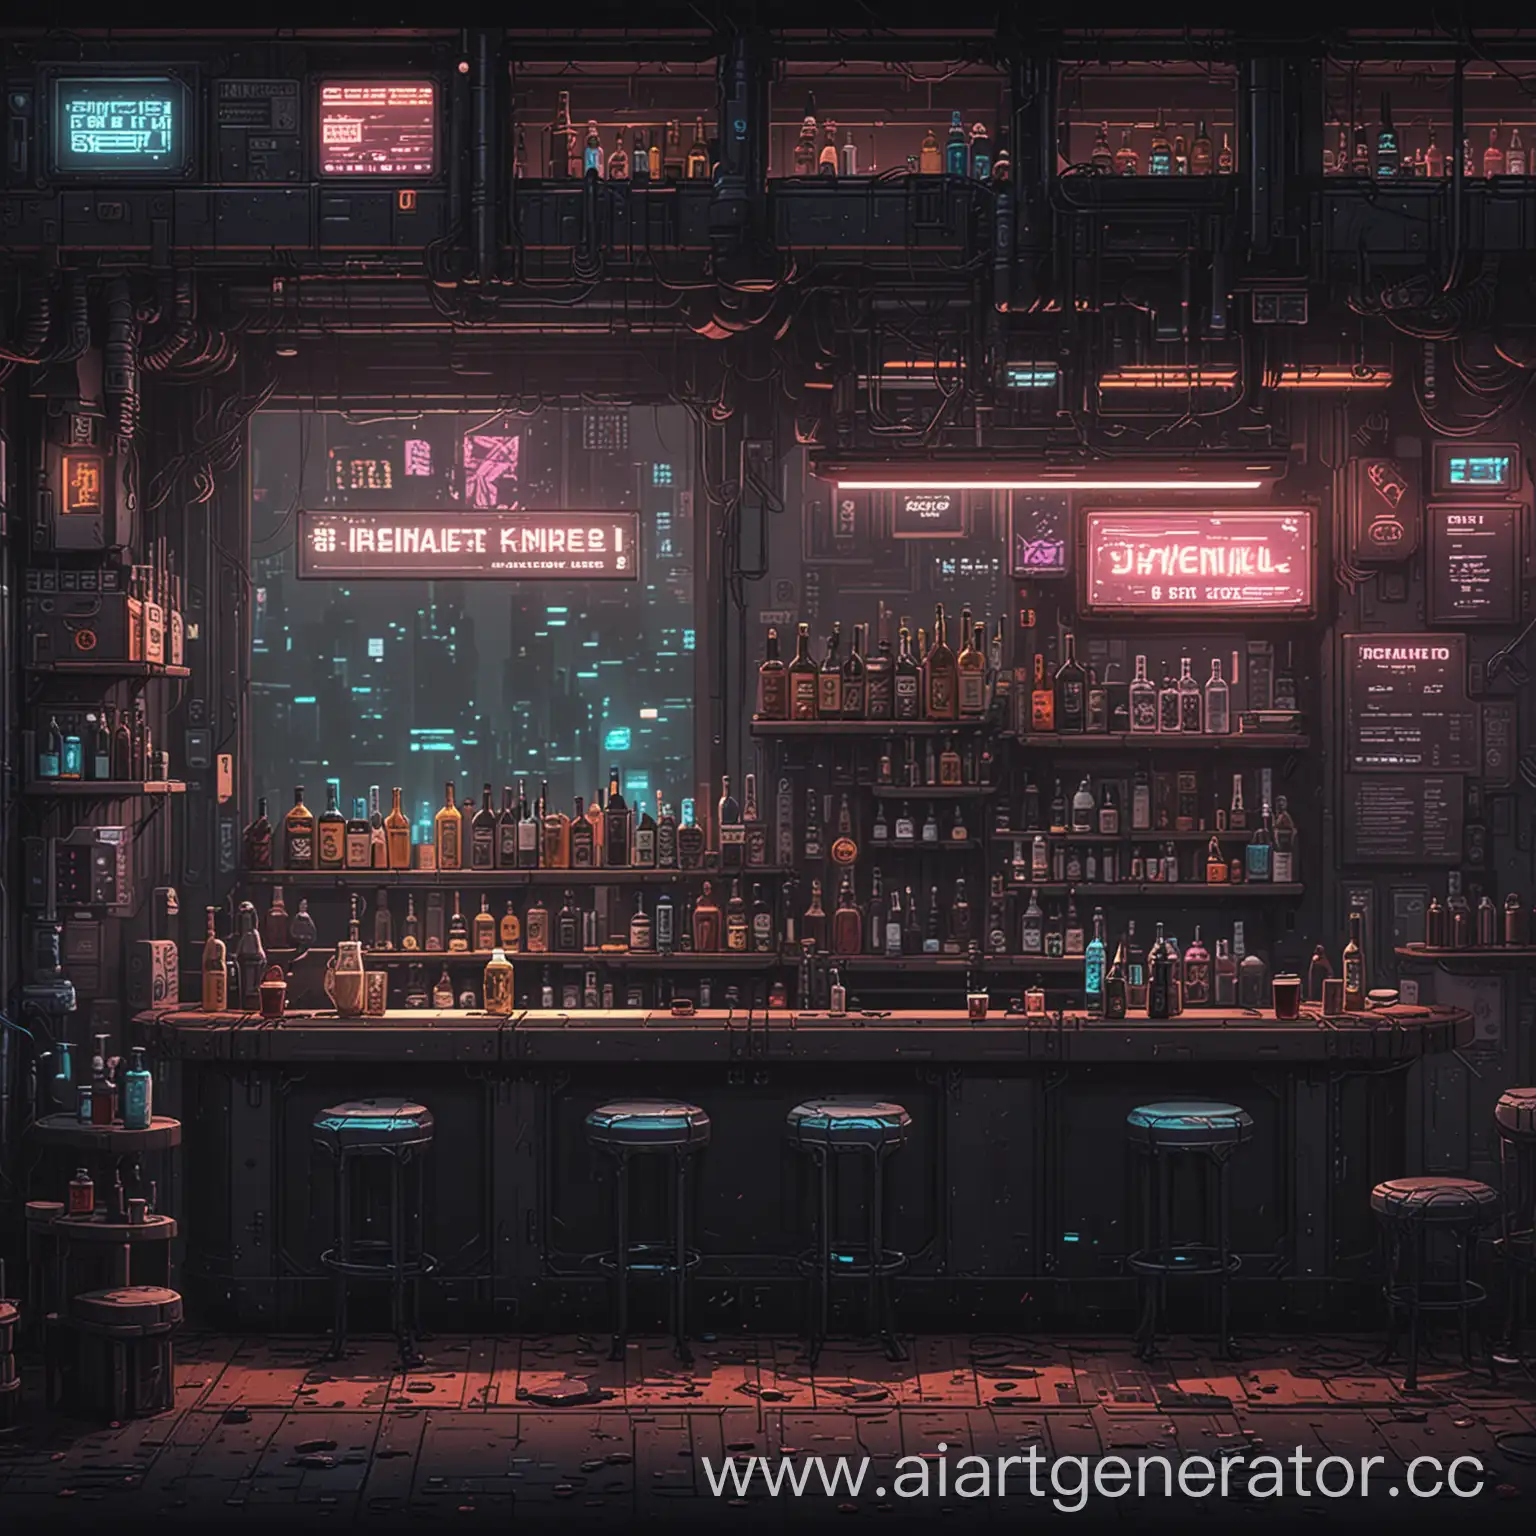 бар в стиле киберпанка в пиксель арте с видом от 2 лица